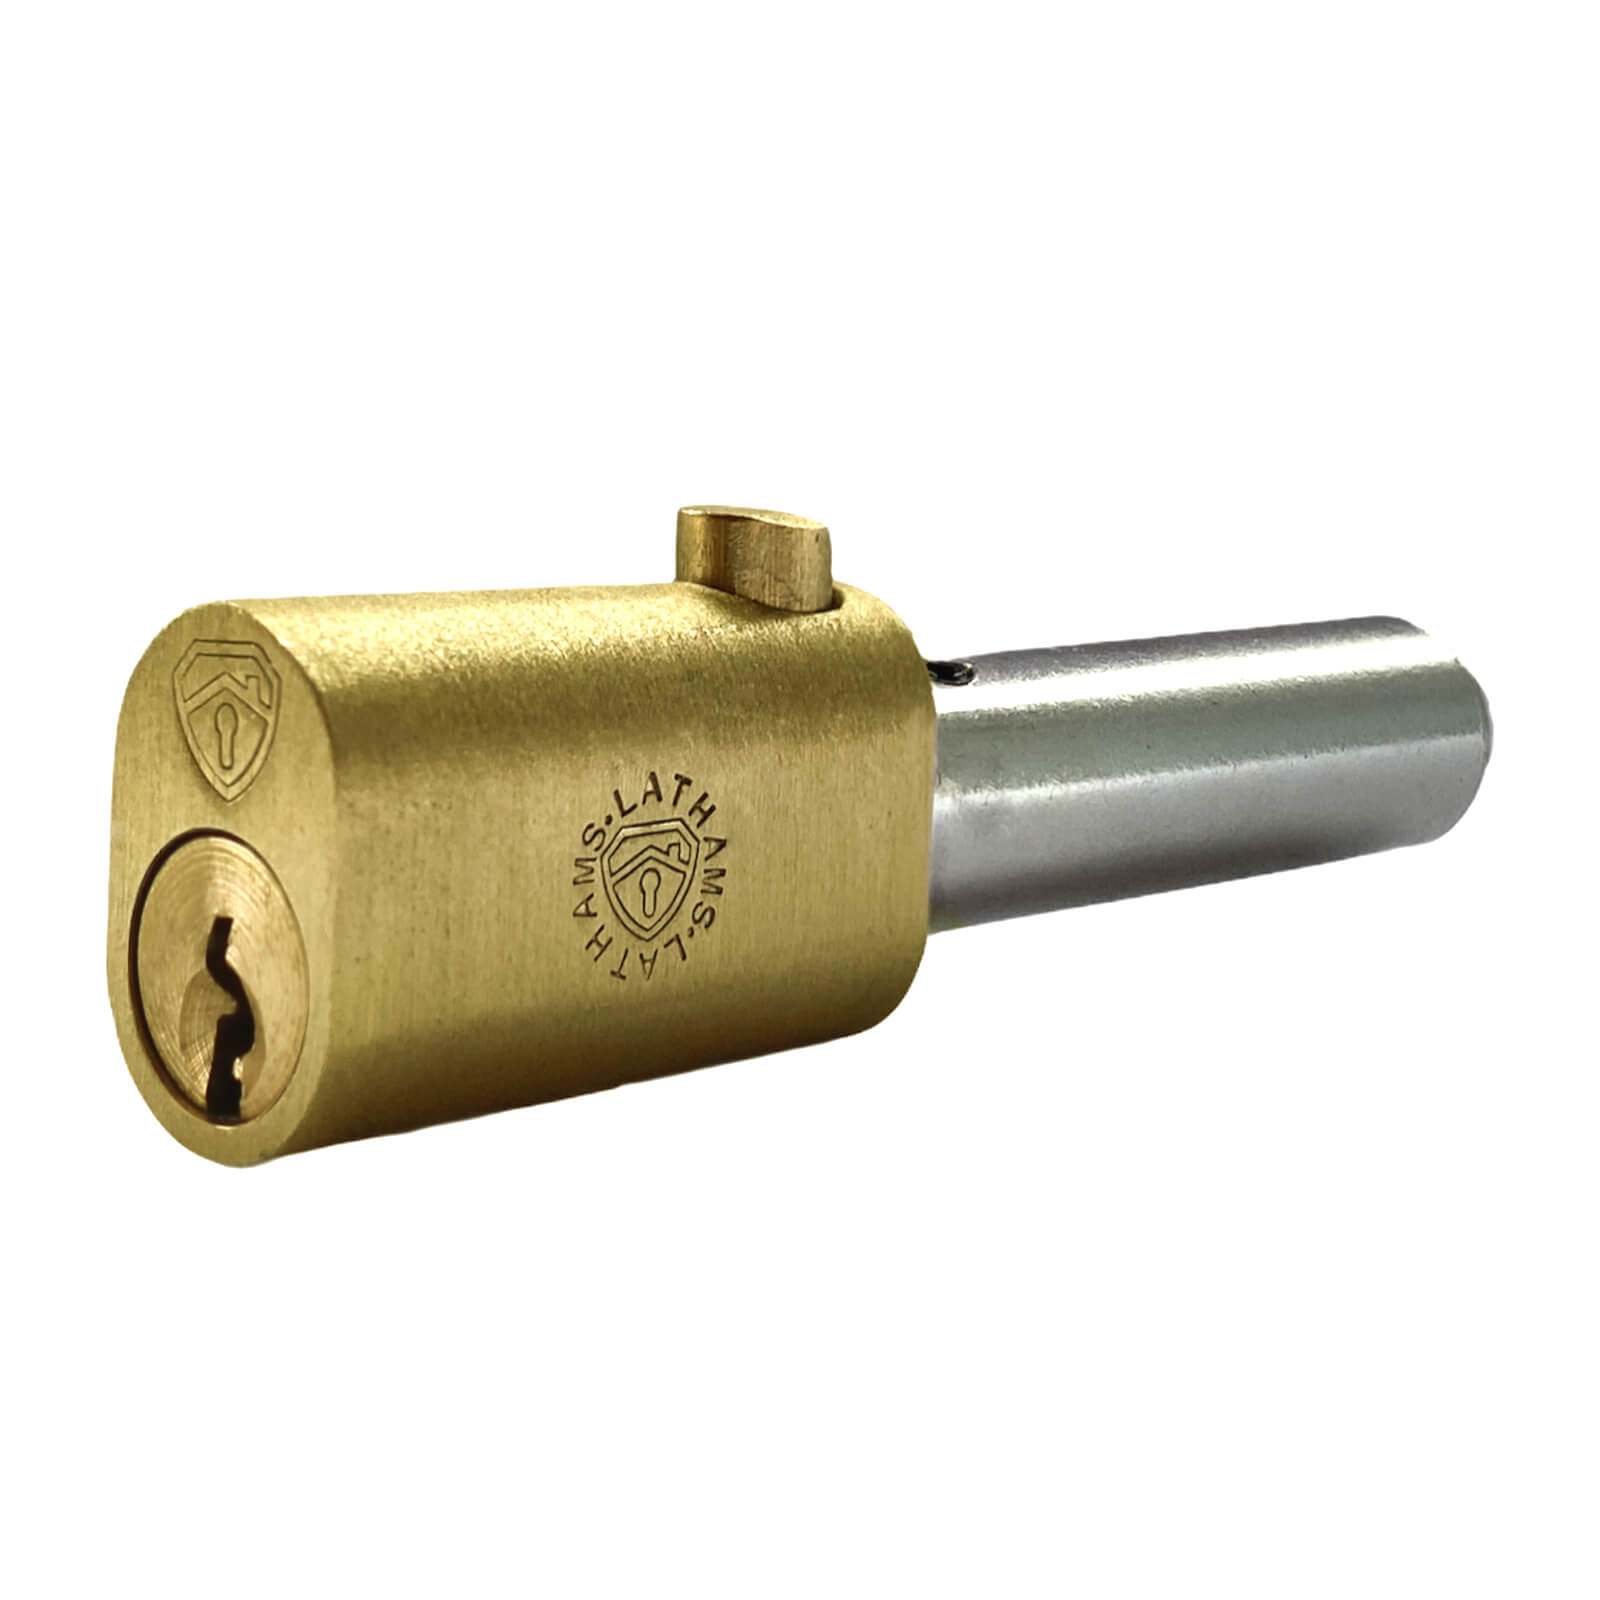 Roller Shutter Oval Bullet Lock